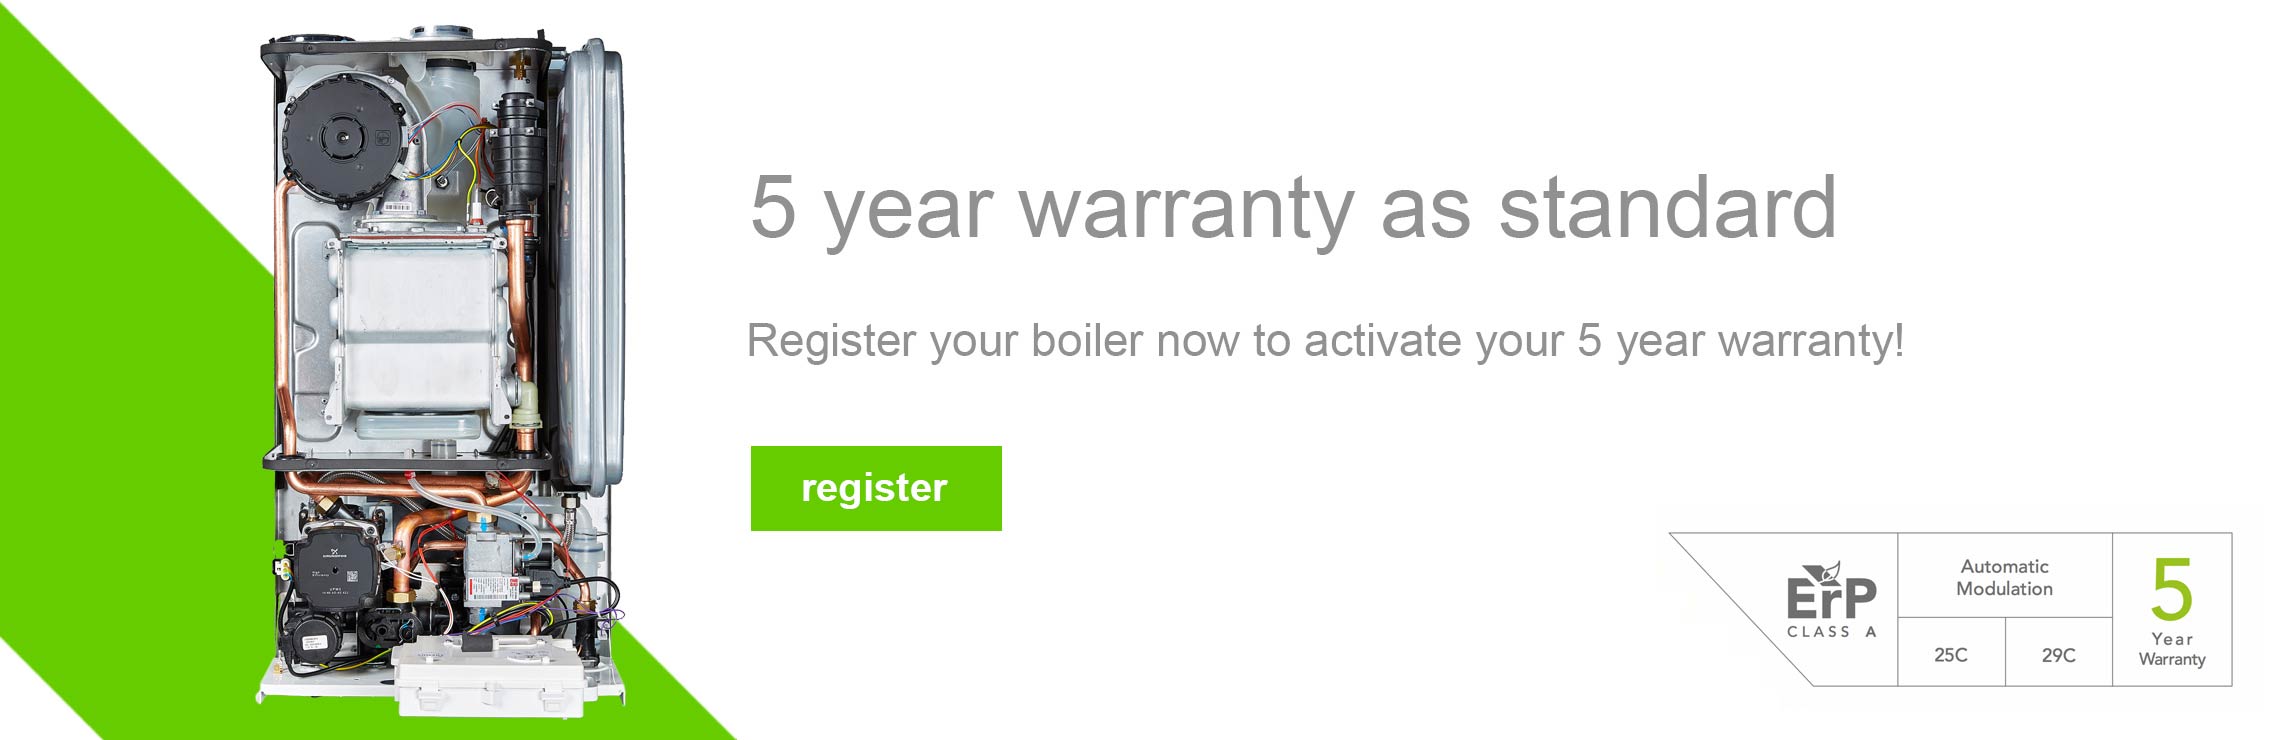 5 year warranty as standard